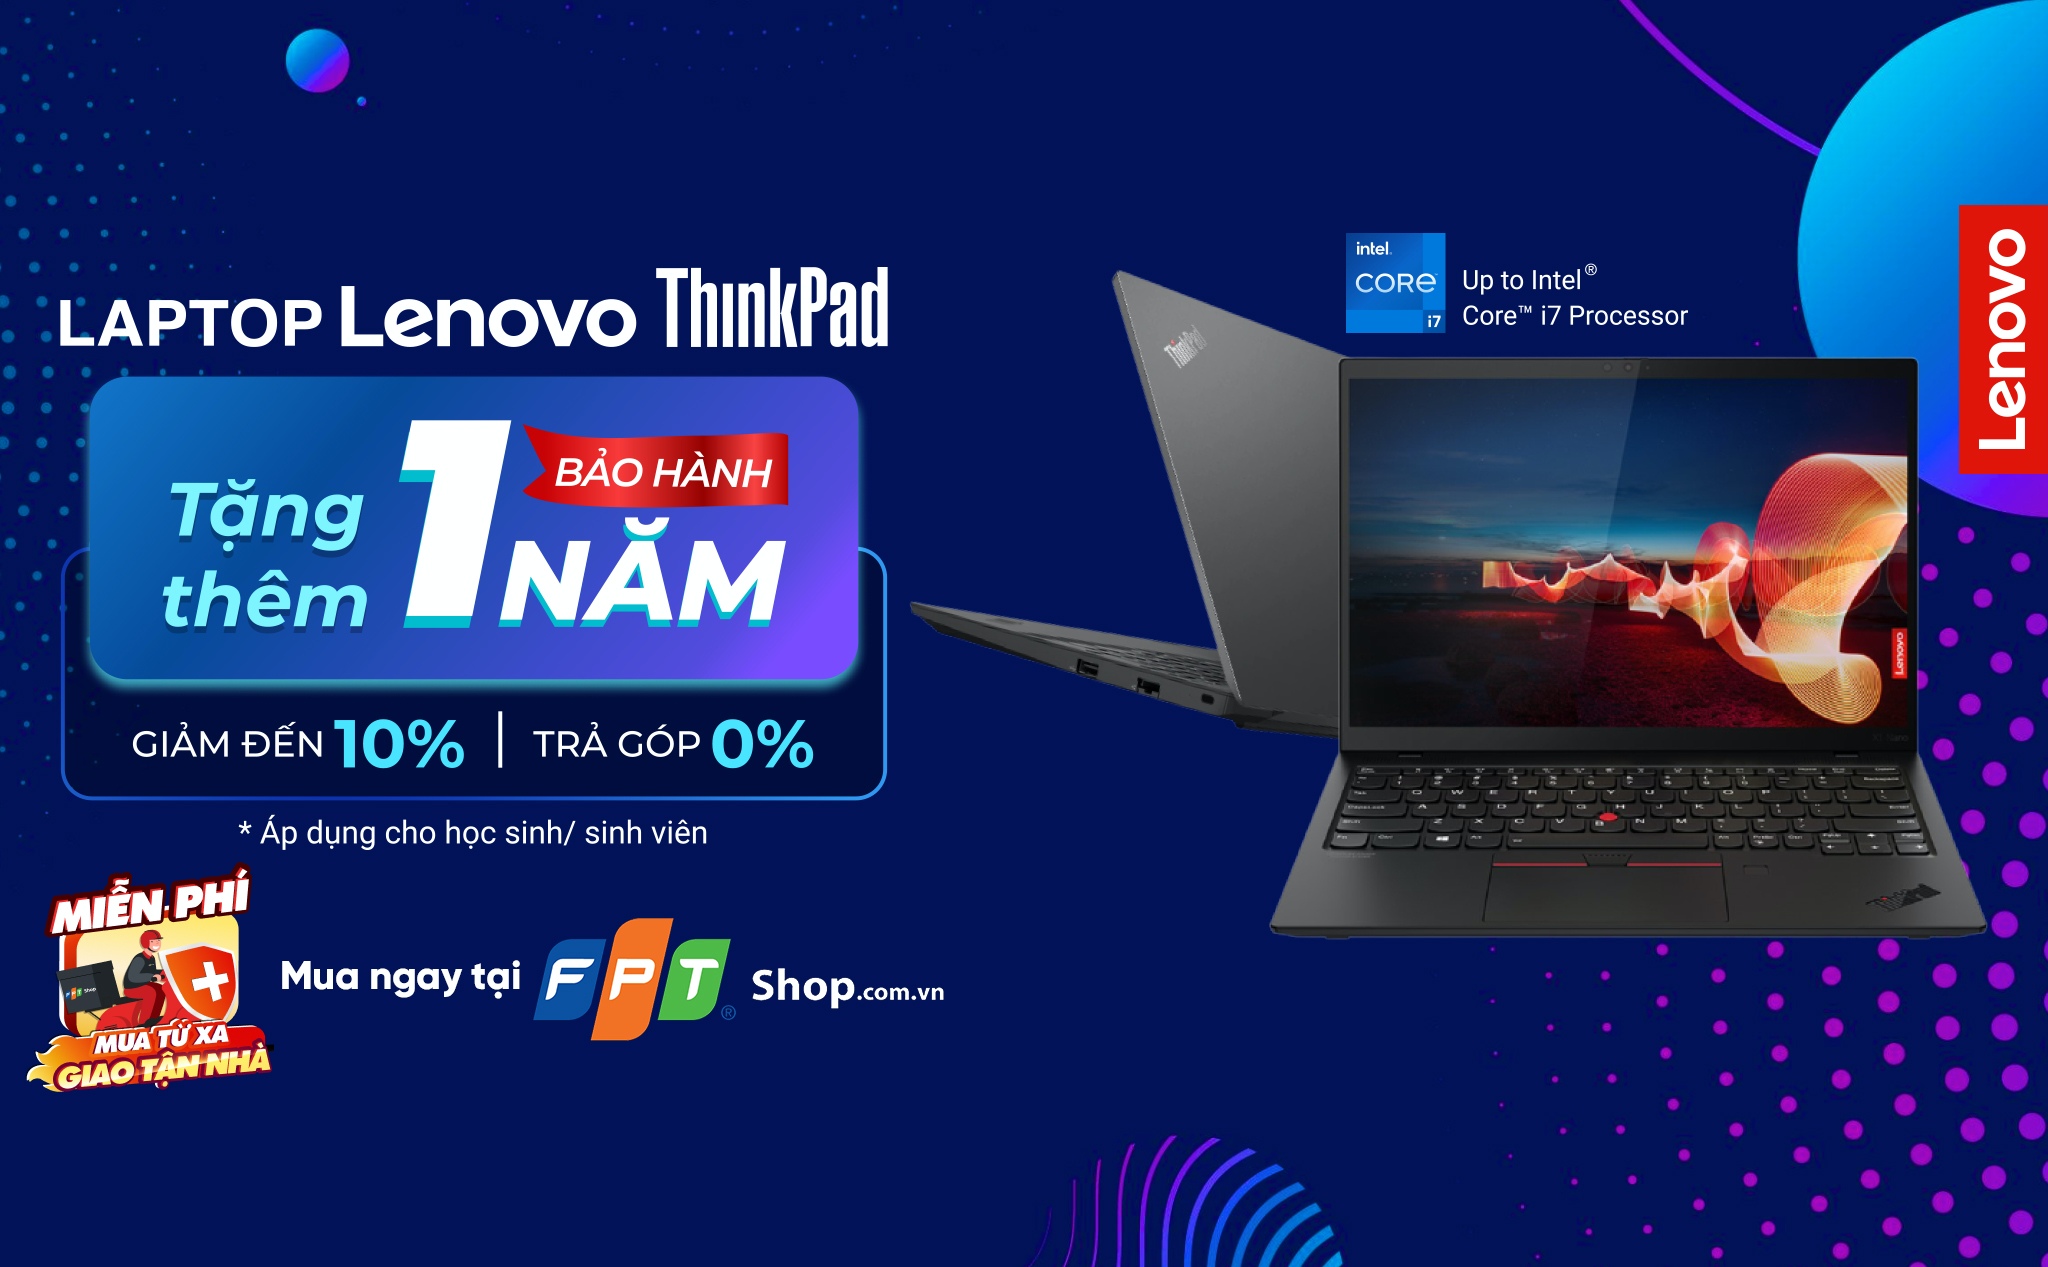 [QC] FPT Shop tặng 1 năm bảo hành và giảm đến 10% cho laptop Lenovo ThinkPad